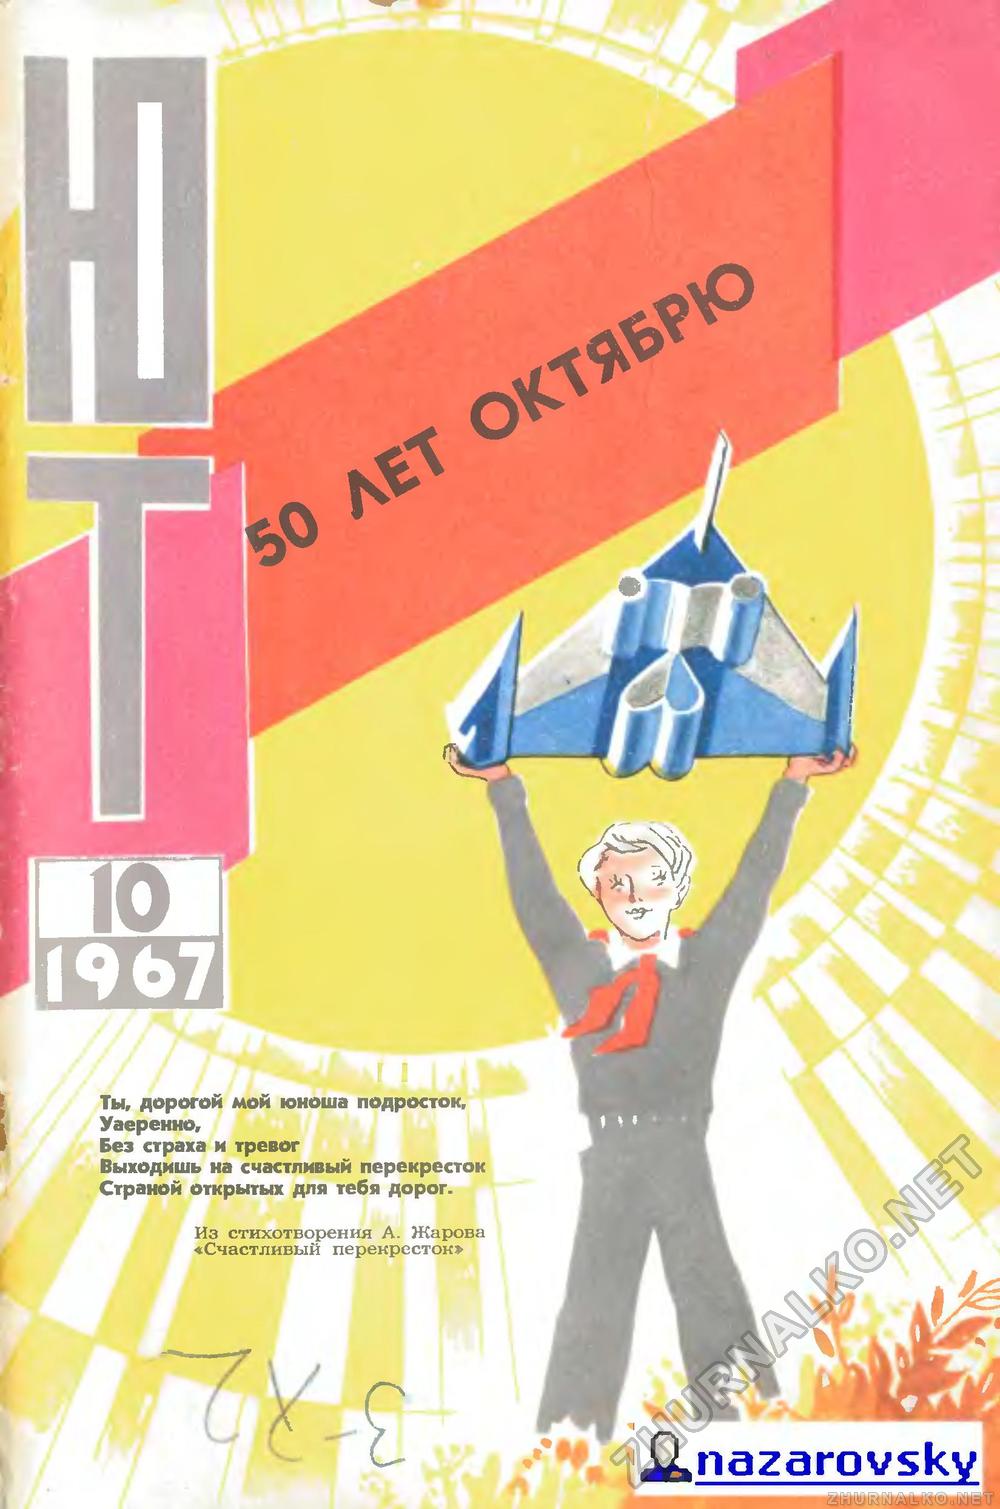   1967-10,  1